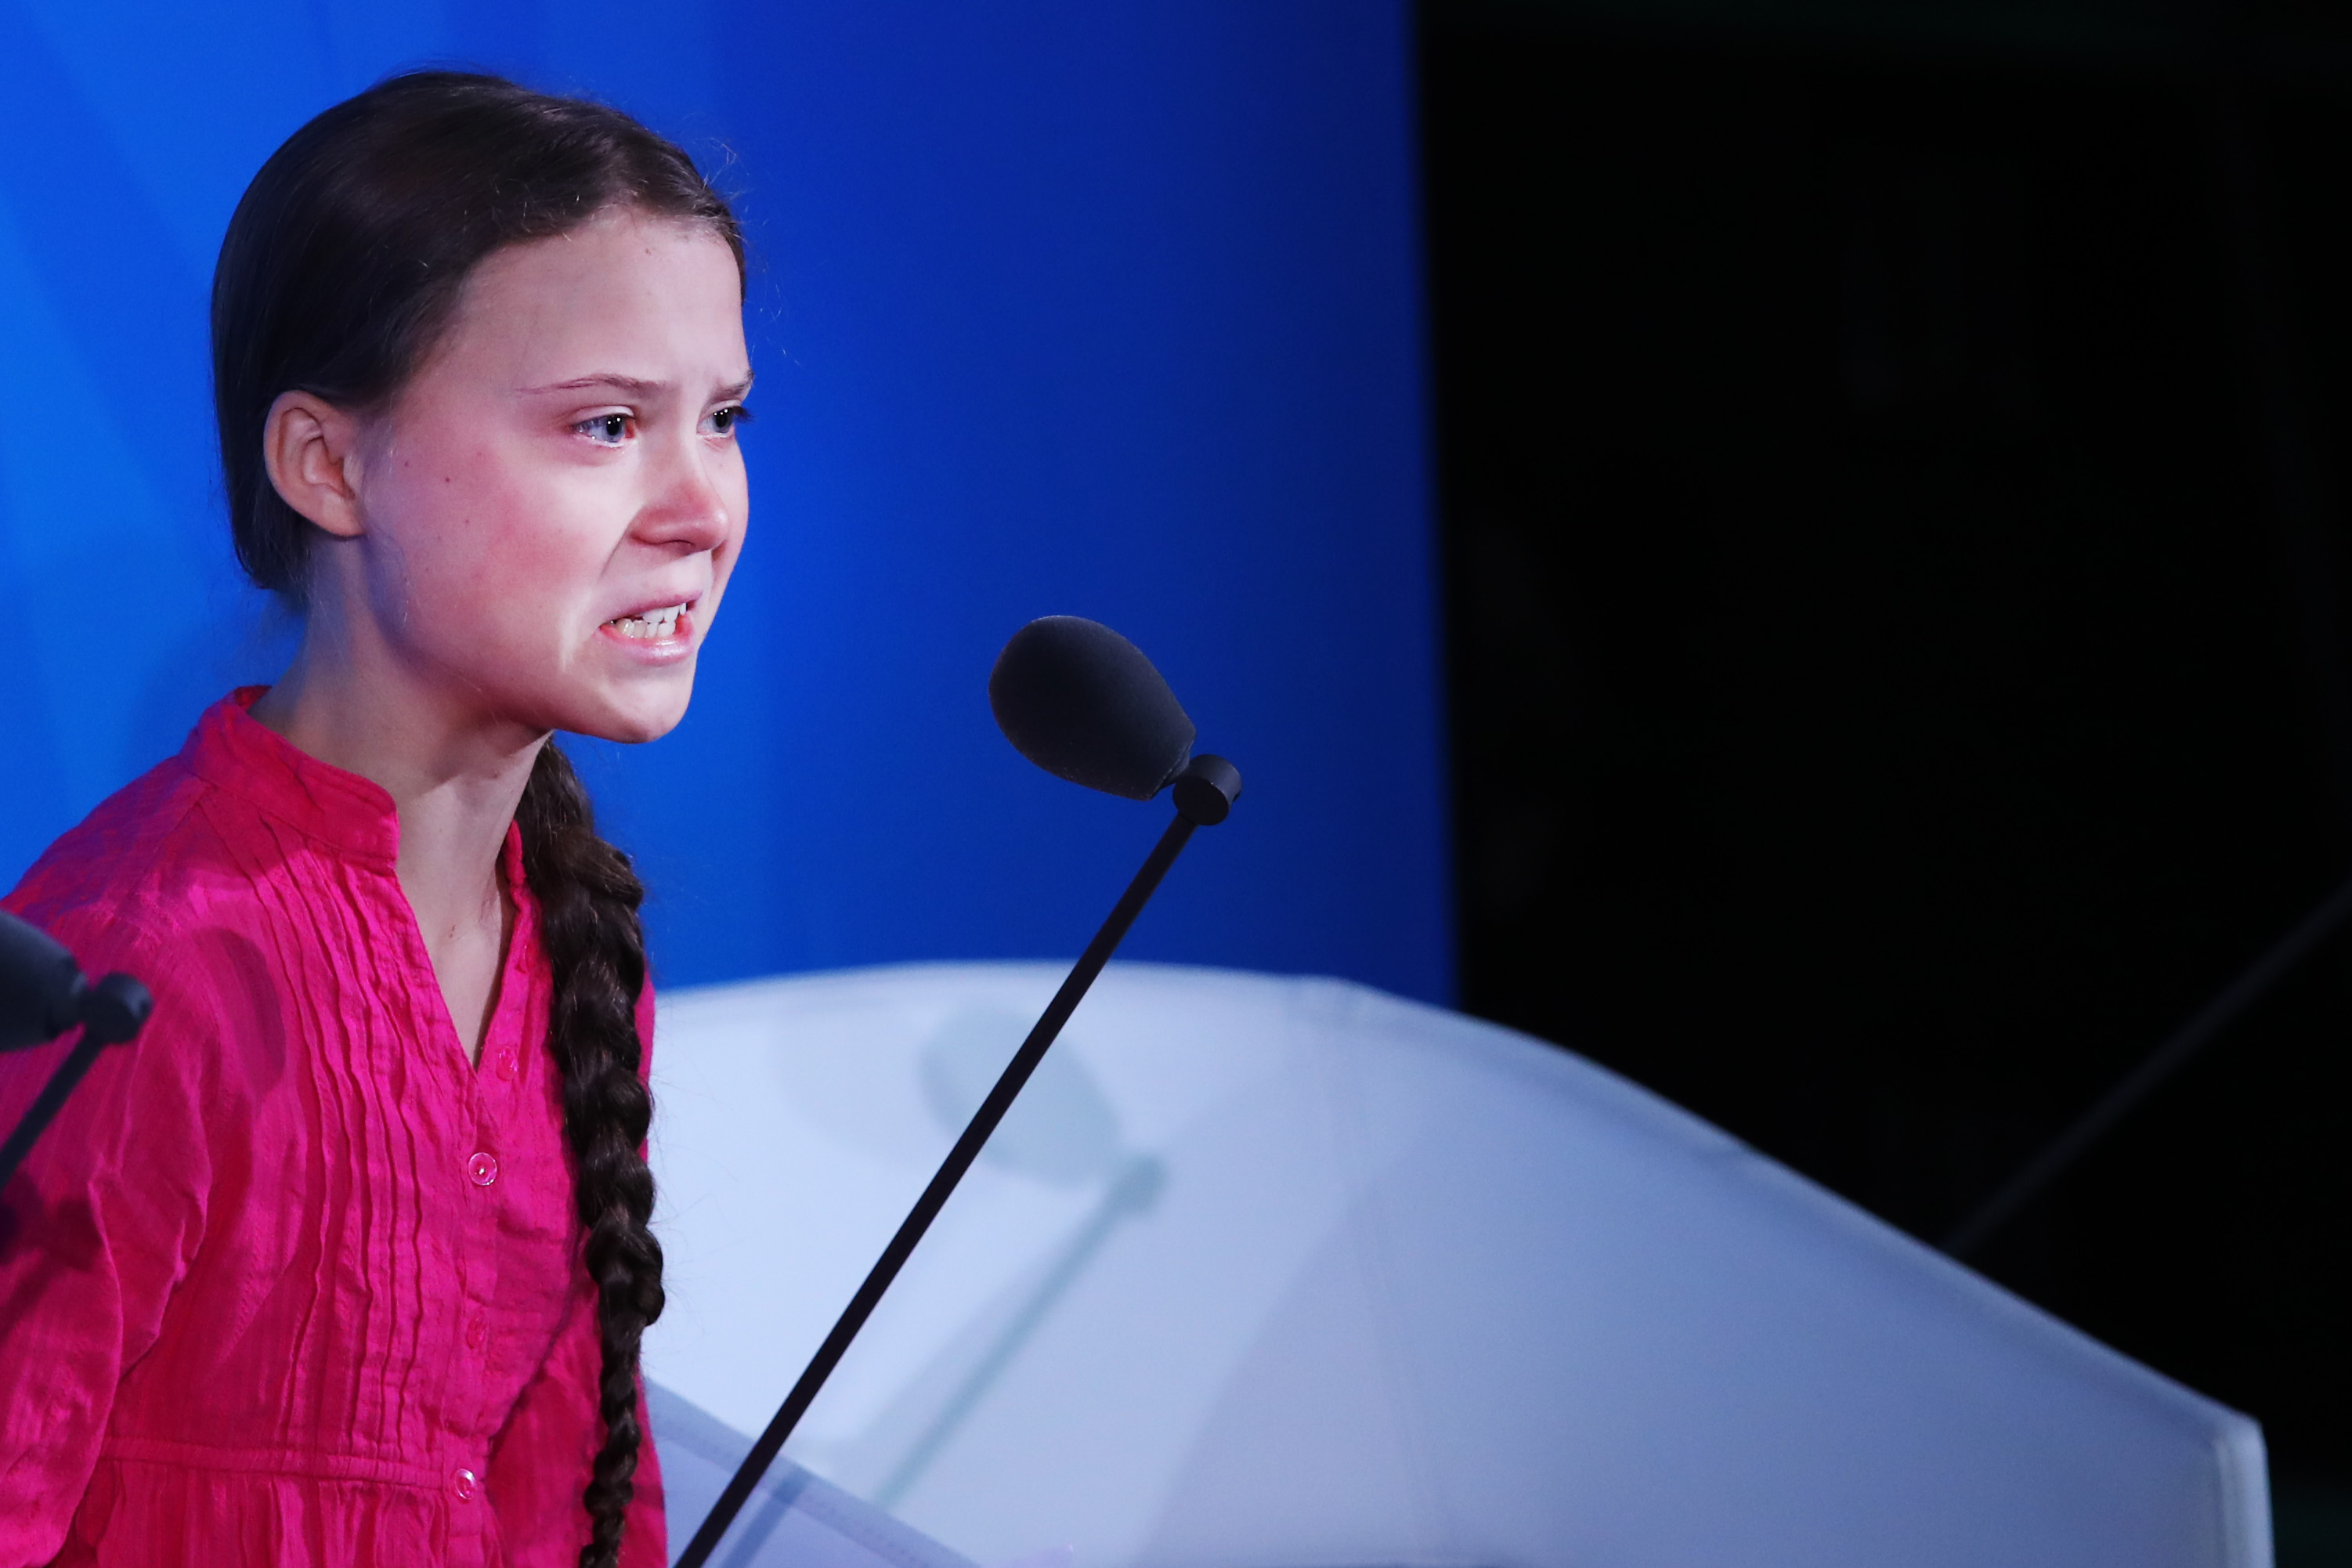 Greta Thunberg a világ vezetőinek: Ellopták az álmaim. Hogy merészelik?